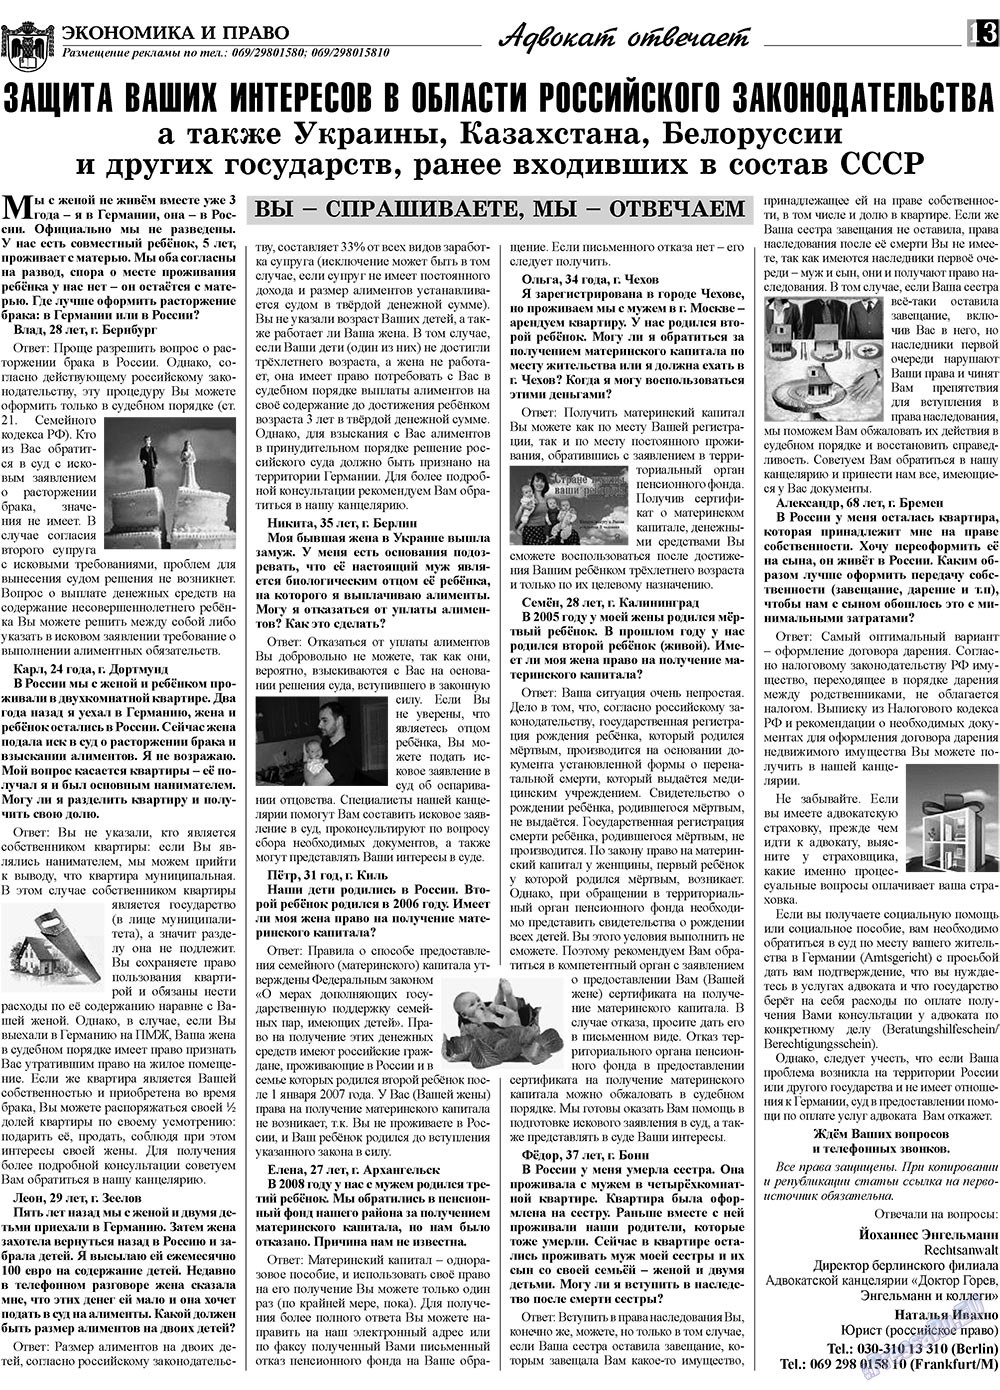 Экономика и право, газета. 2010 №1 стр.13